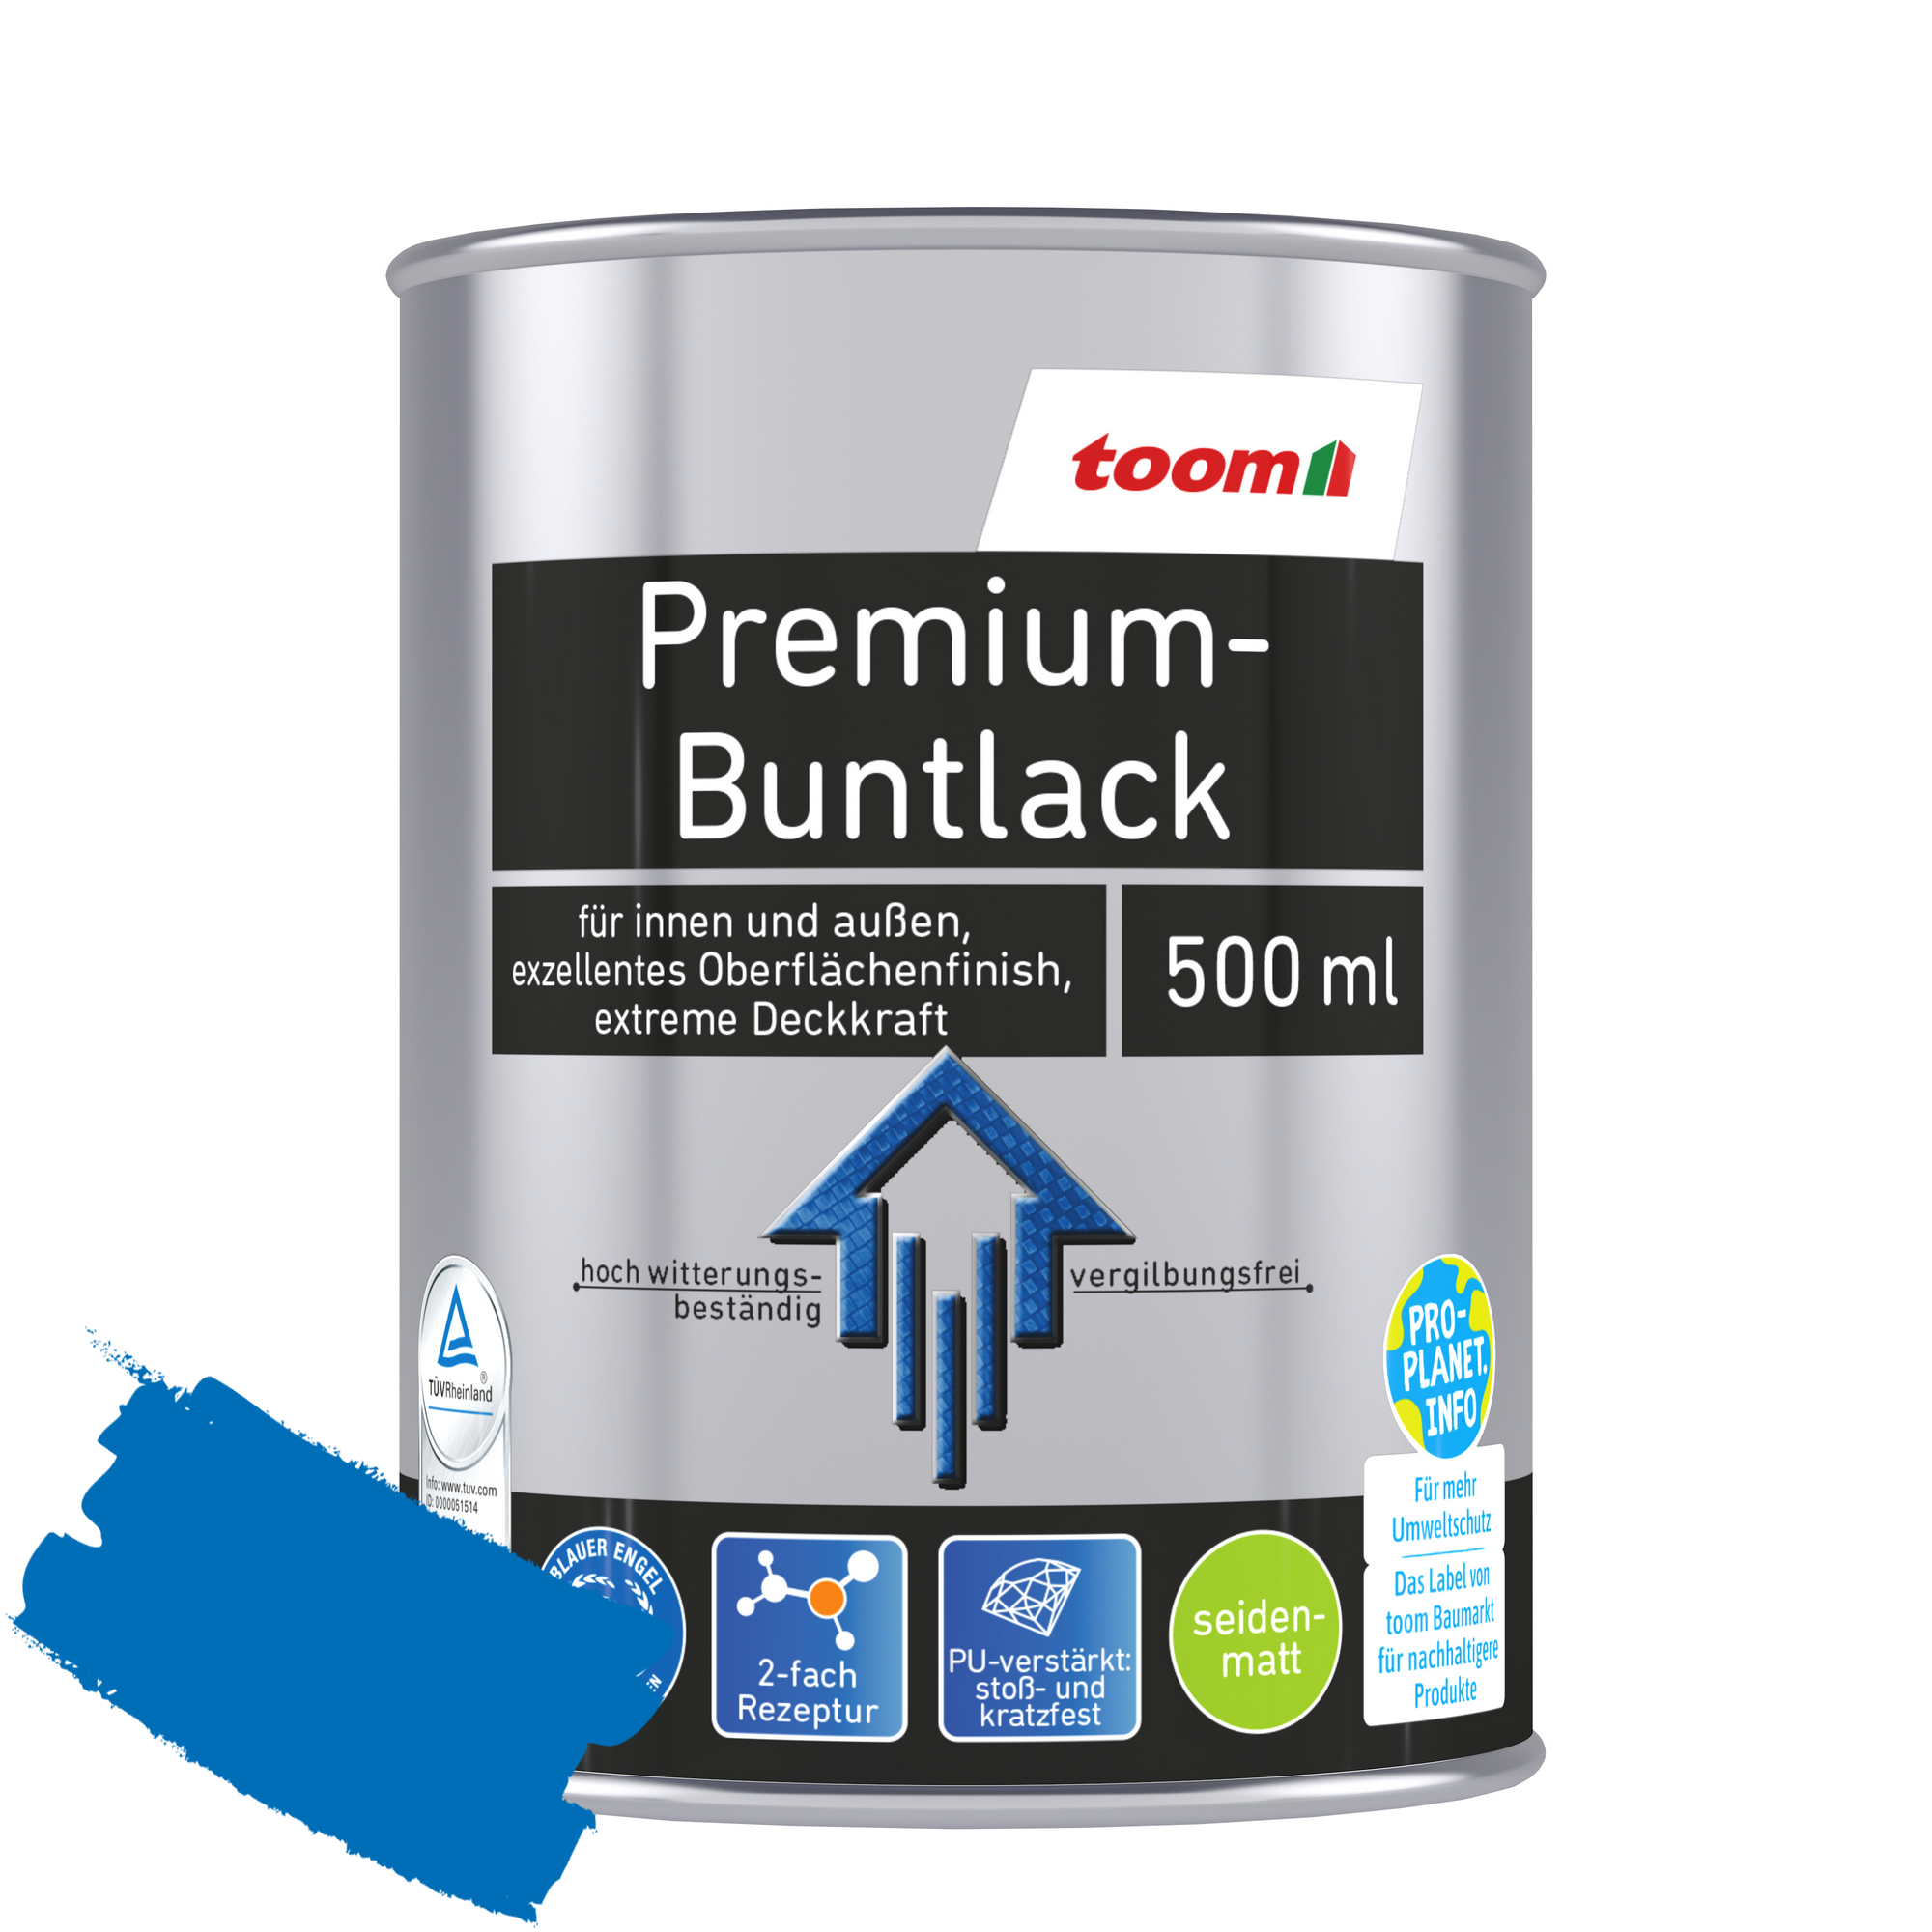 Premium-Buntlack pazifikblau seidenmatt 500 ml + product picture